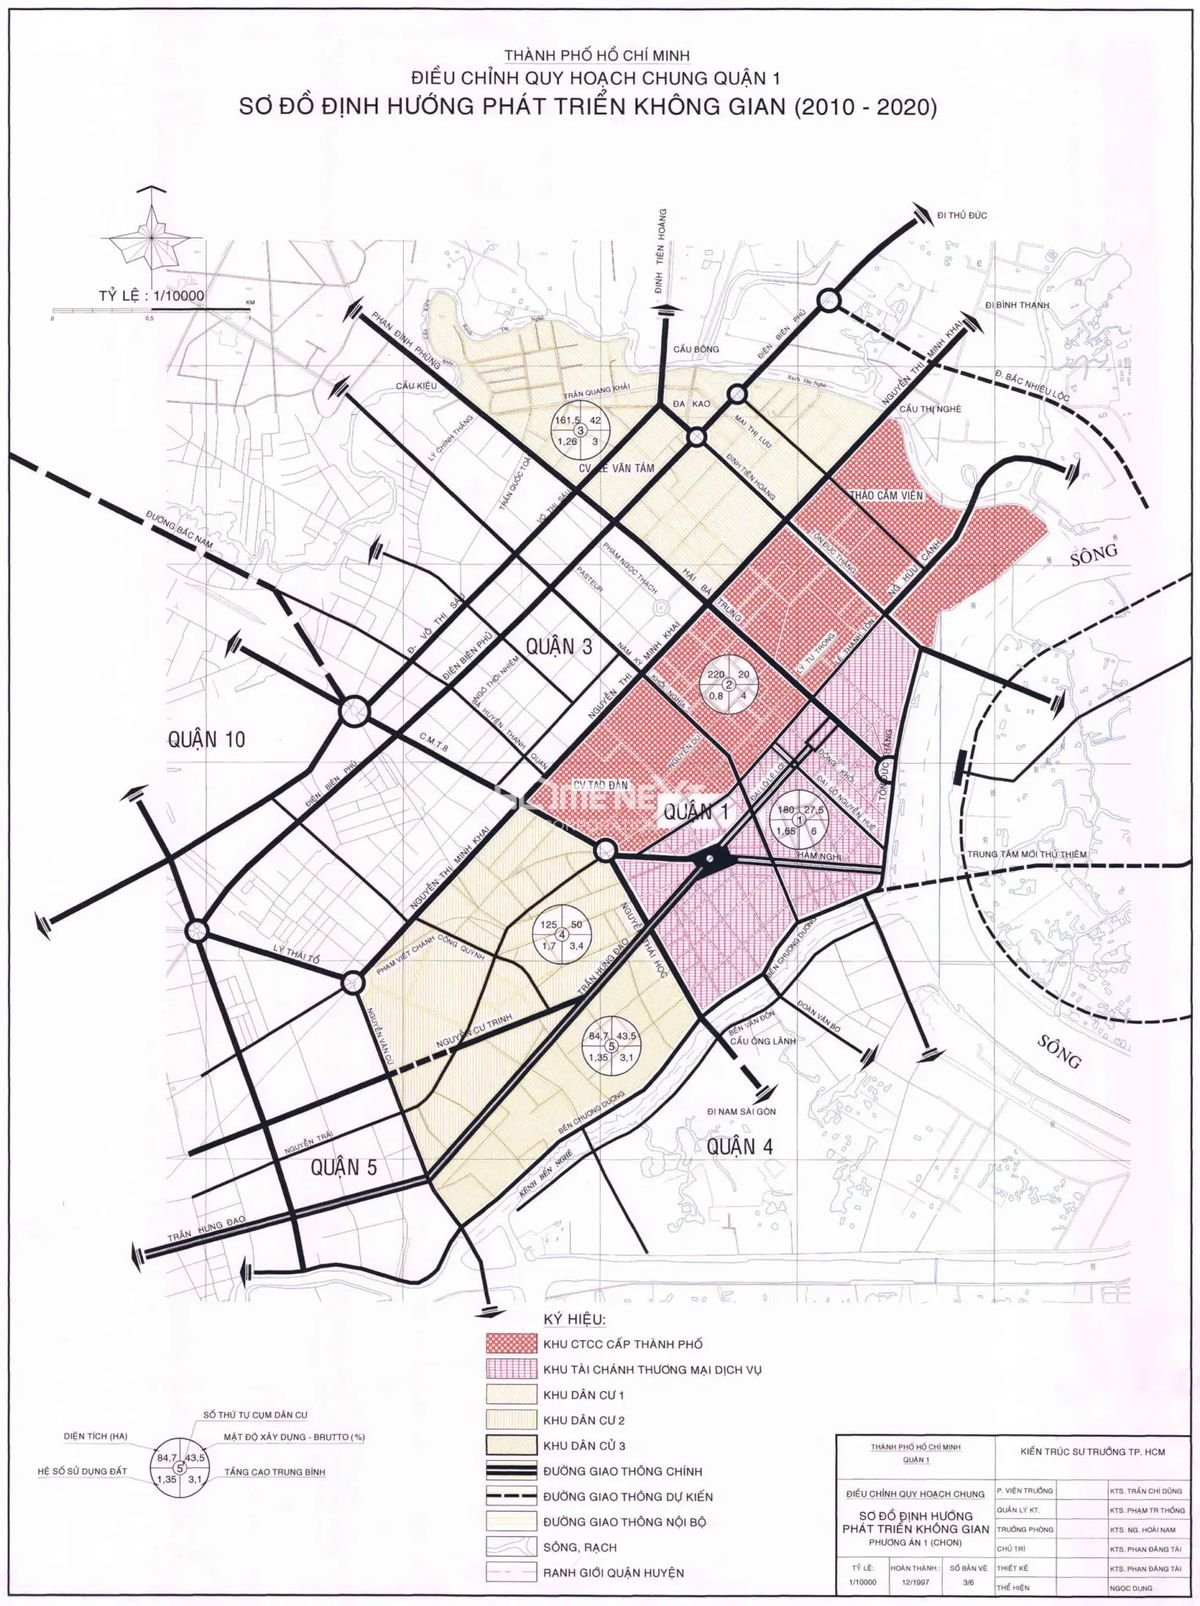 Cập nhật bản đồ Quận 1 mới nhất sẽ giúp bạn thuận tiện hơn trong việc di chuyển tại địa phương. Bản đồ với độ chi tiết cao sẽ cho bạn những thông tin chính xác về các con đường, tuyến xe buýt,... Mỗi lần sử dụng là như tham quan lại cả thành phố.